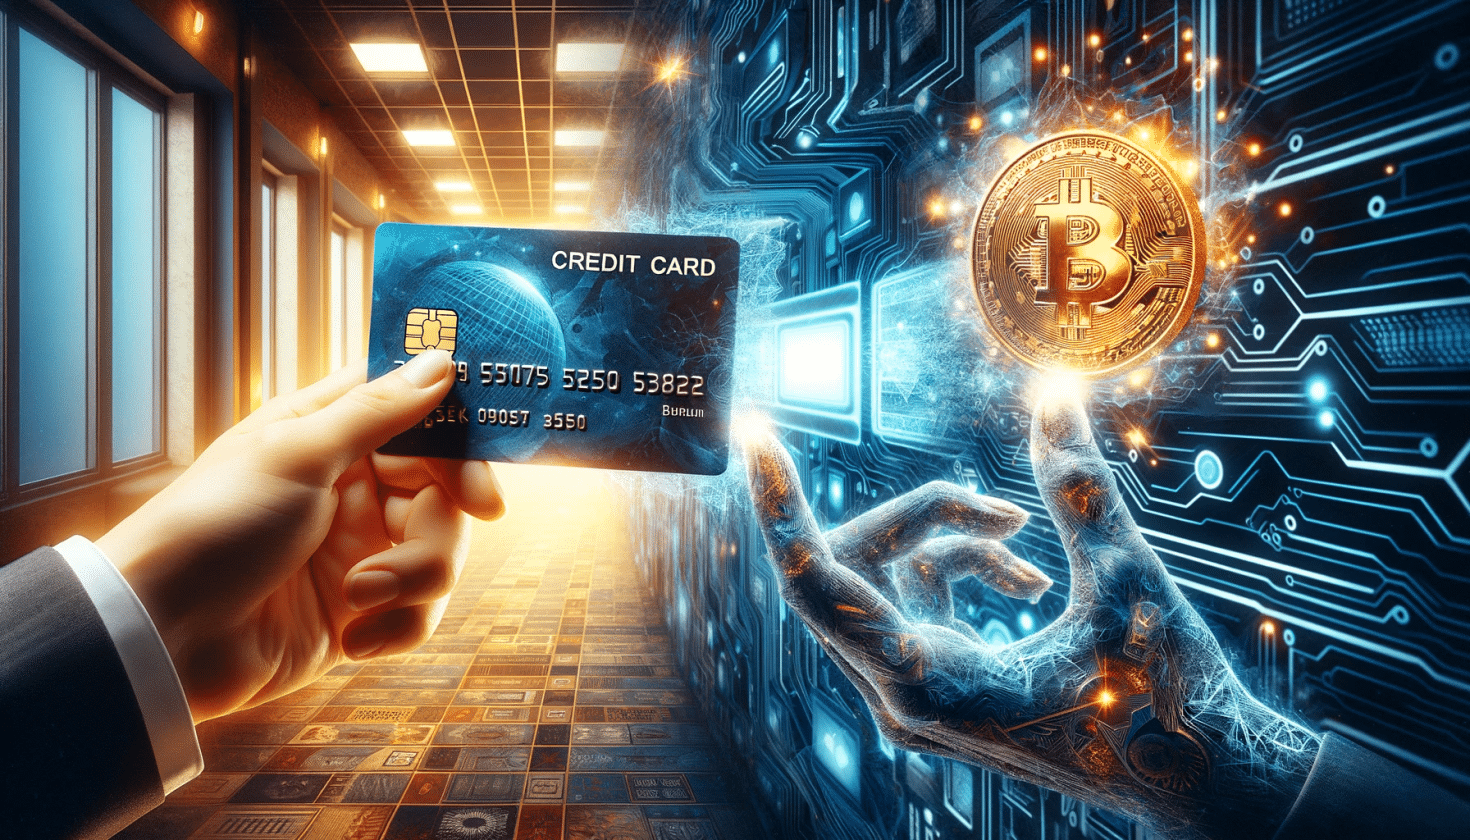 Representação artística que combina cartões de crédito e criptomoedas, com uma cena dividida mostrando um cartão de crédito físico e uma representação digital de uma criptomoeda.